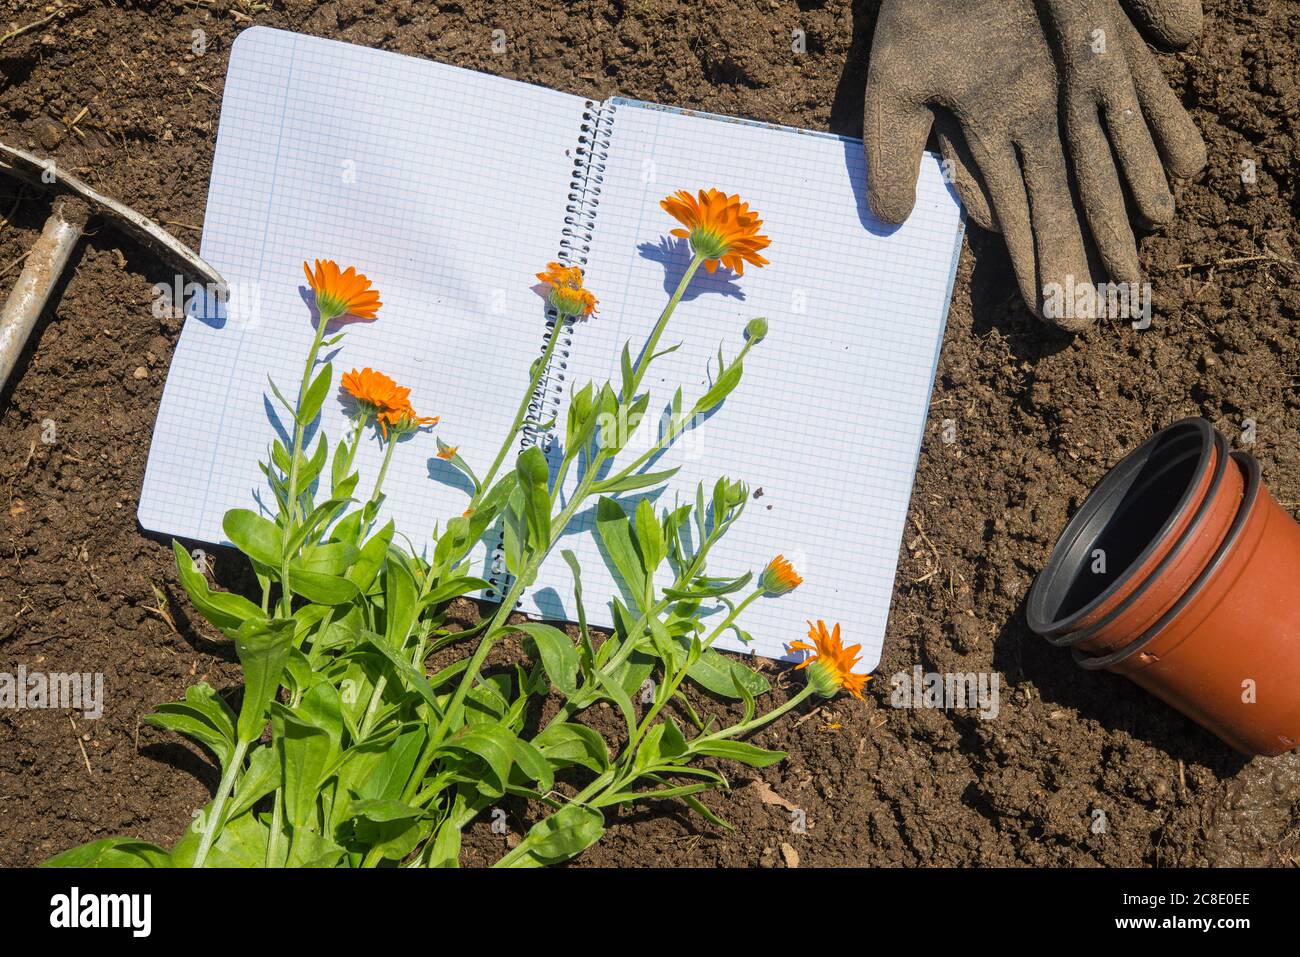 Blumen mit Töpfen von Buch und Handschuhe an Land in Garten Stockfoto